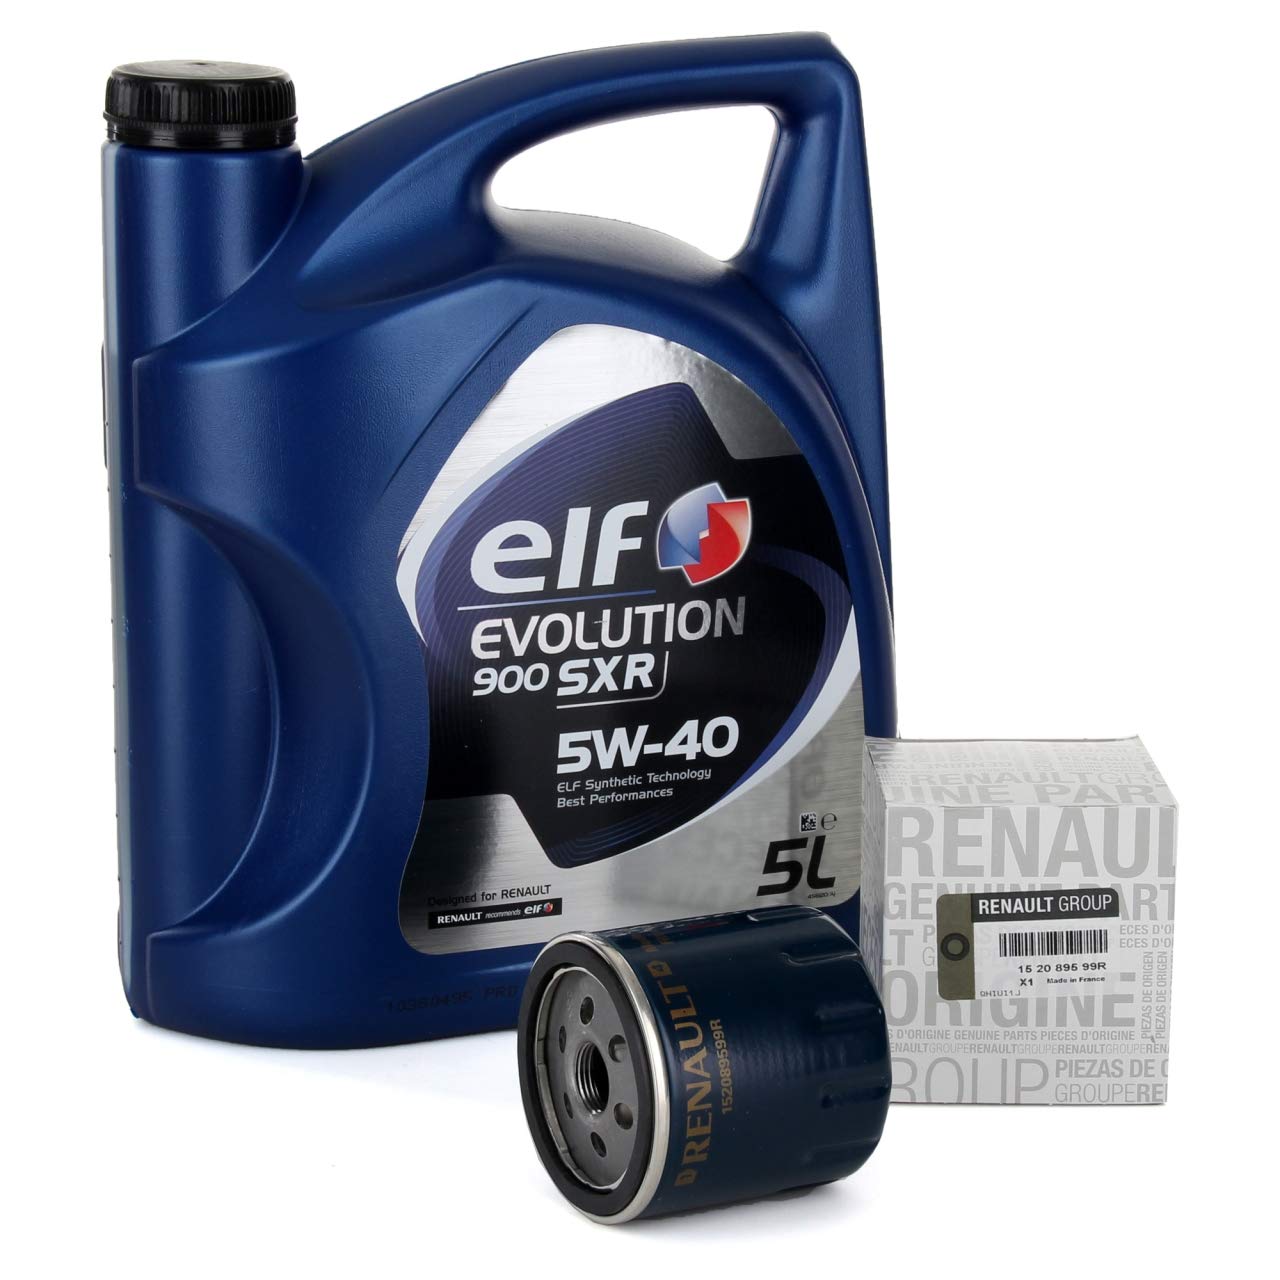 Duo Service Oil Change - Elf Evolution SXR 5W-40 5 lts + Original Ölfilter 152089599R von Elf